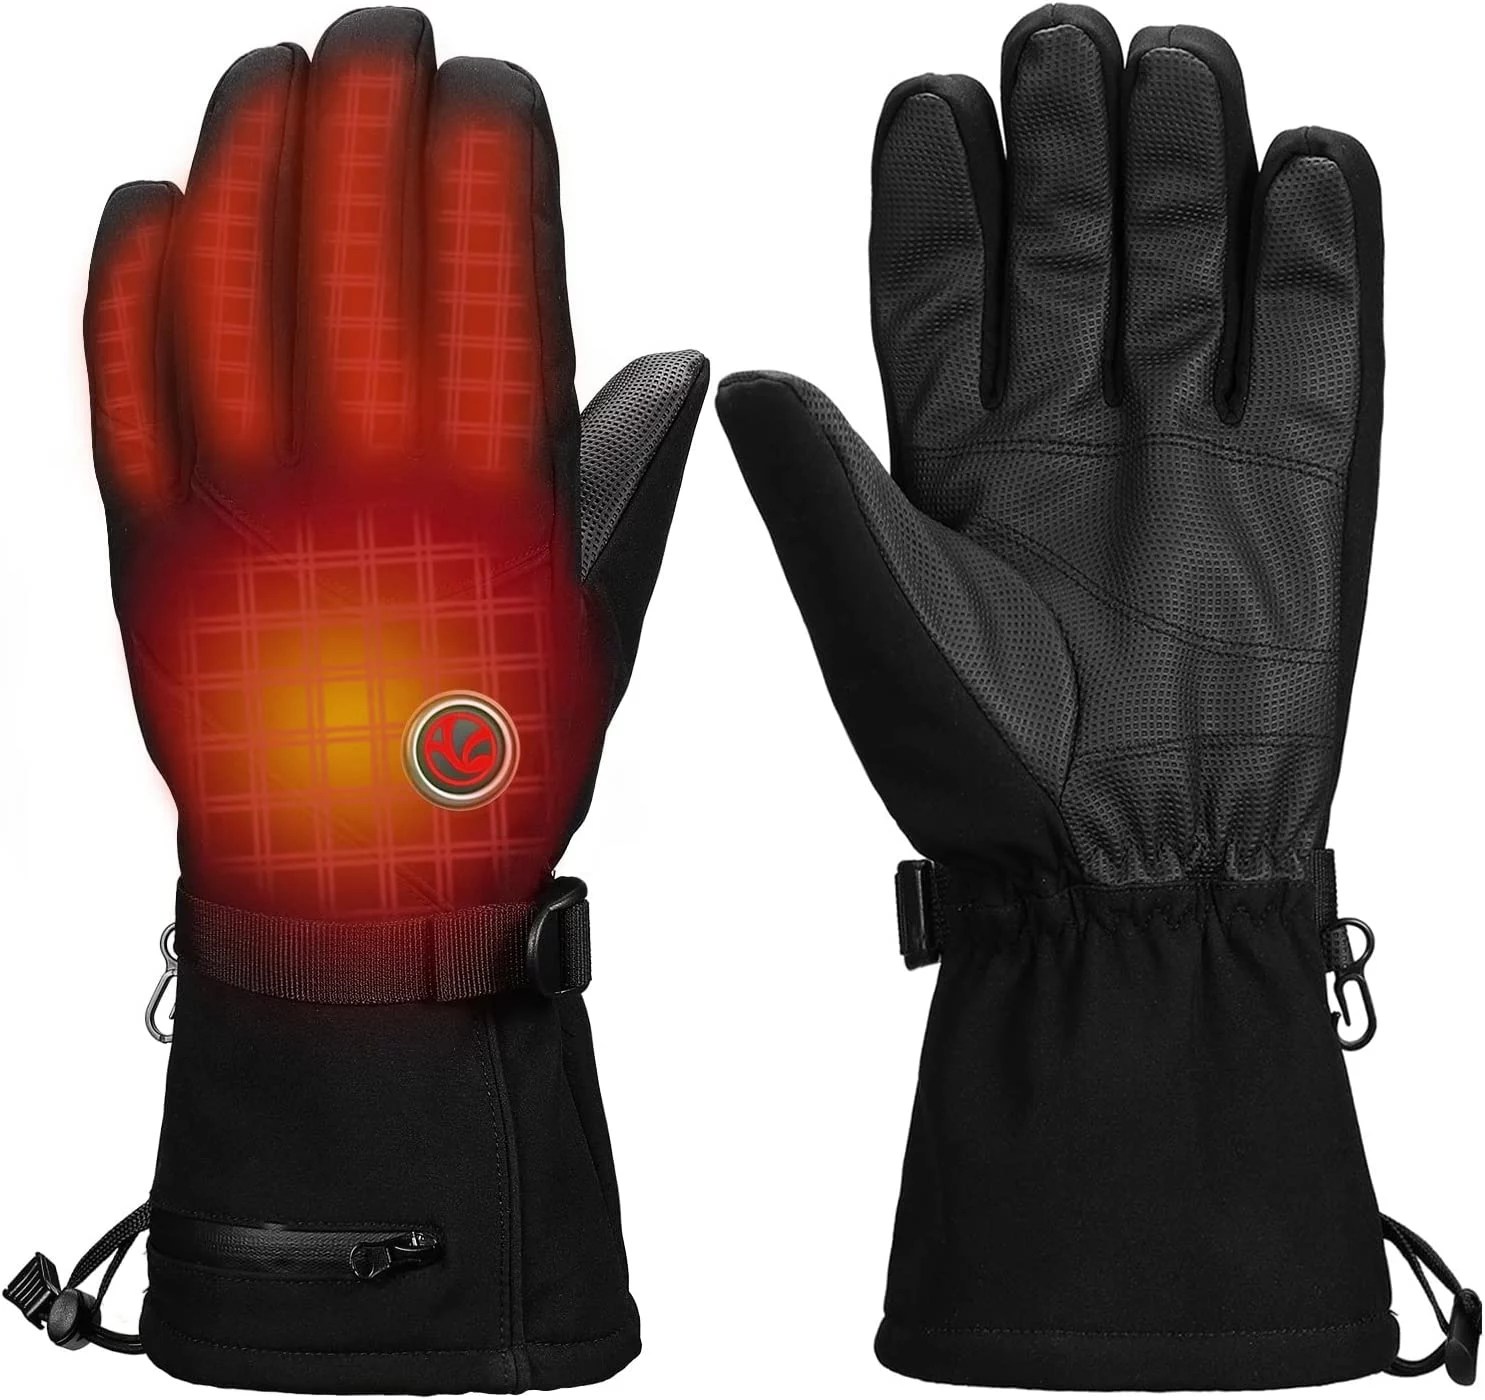 neveland heated gloves